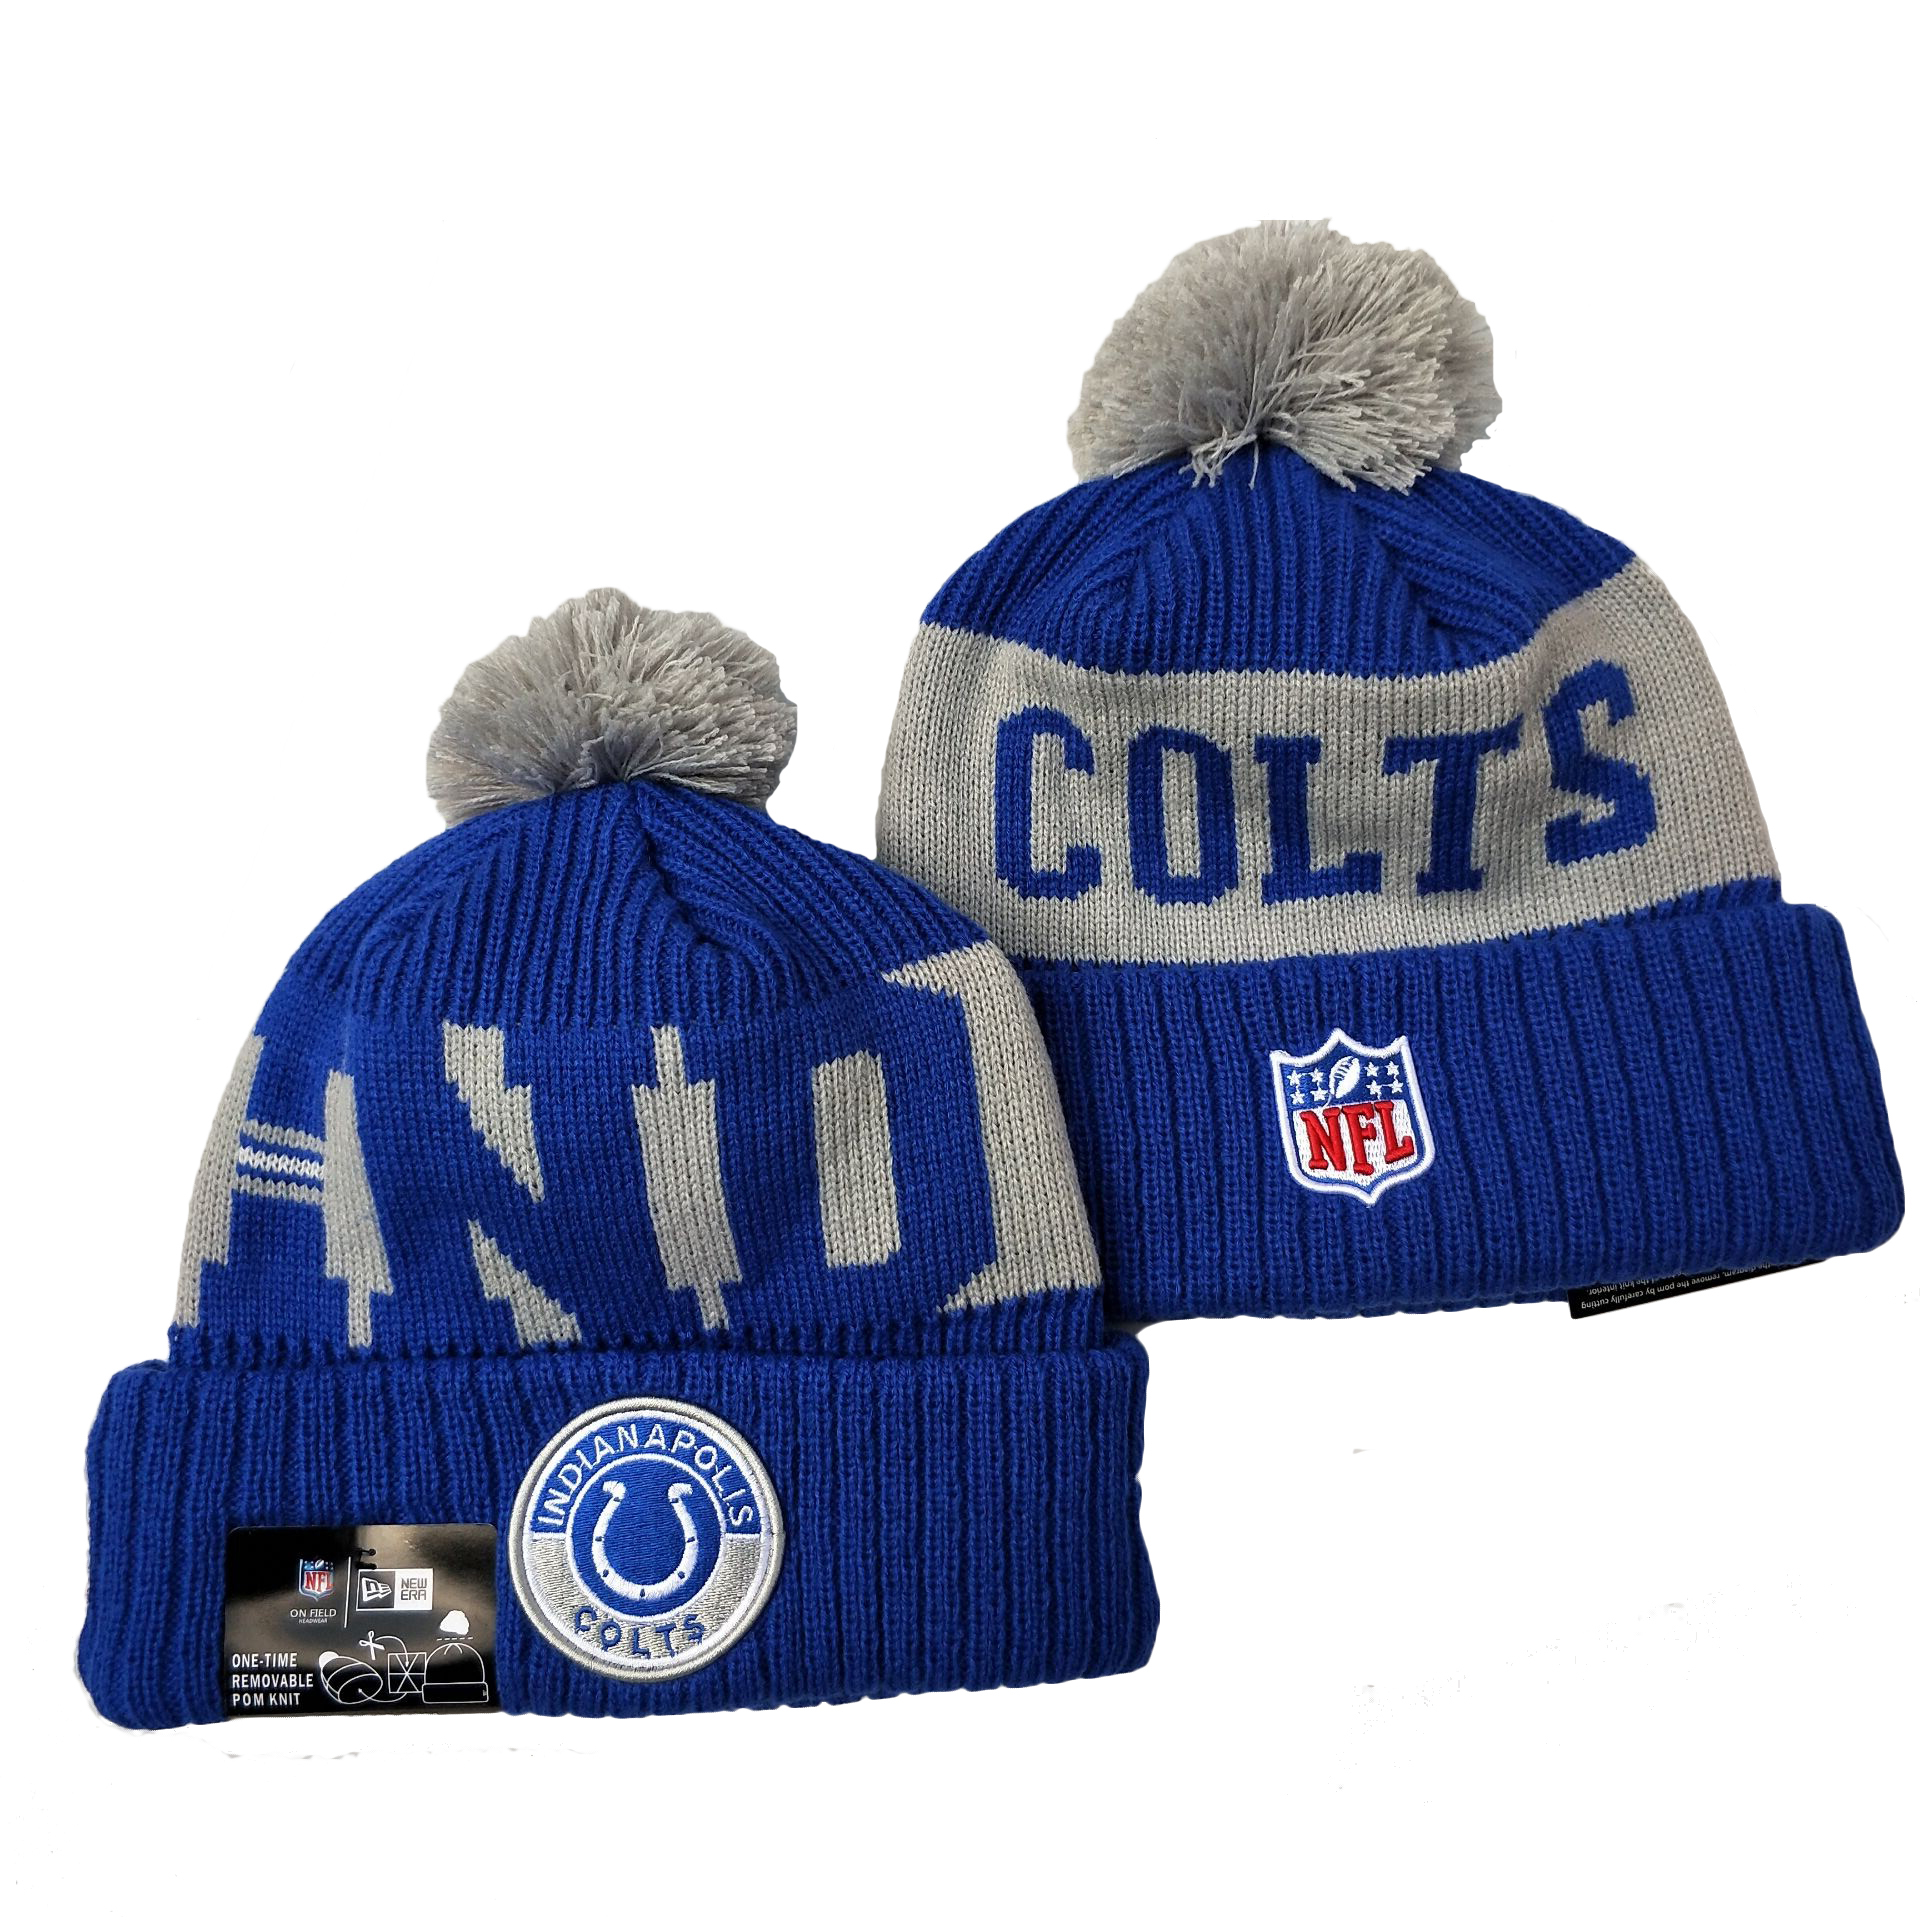 Colts Team Logo Royal 2020 NFL Sideline Pom Cuffed Knit Hat YD